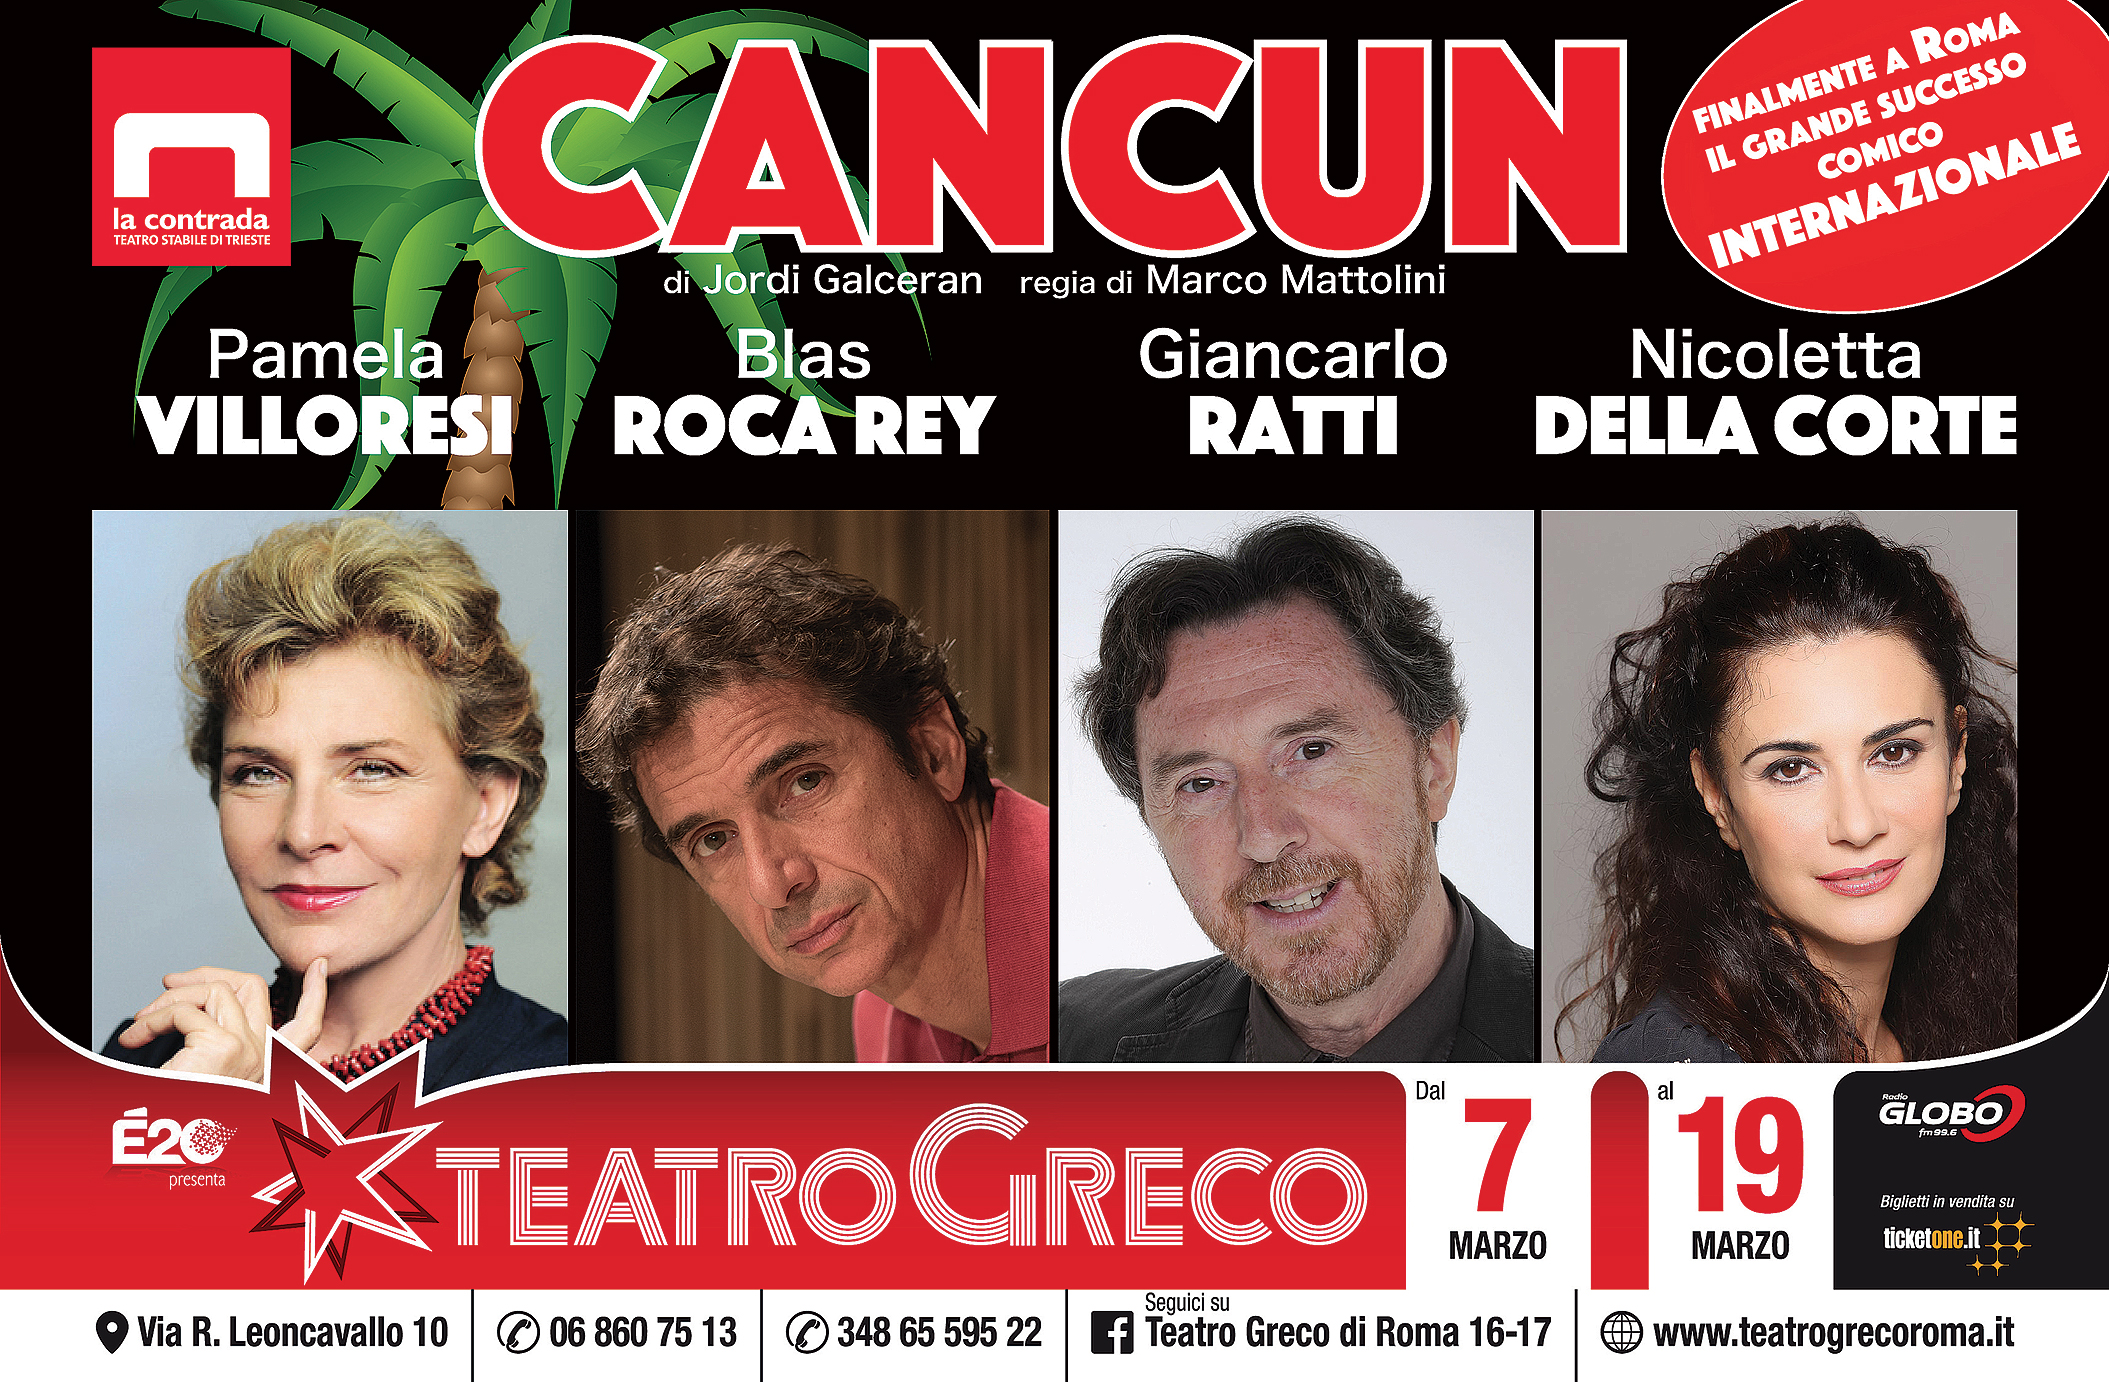 La locandina di Cancun, spettacolo con Pamela Villoresi al Teatro Greco di Roma